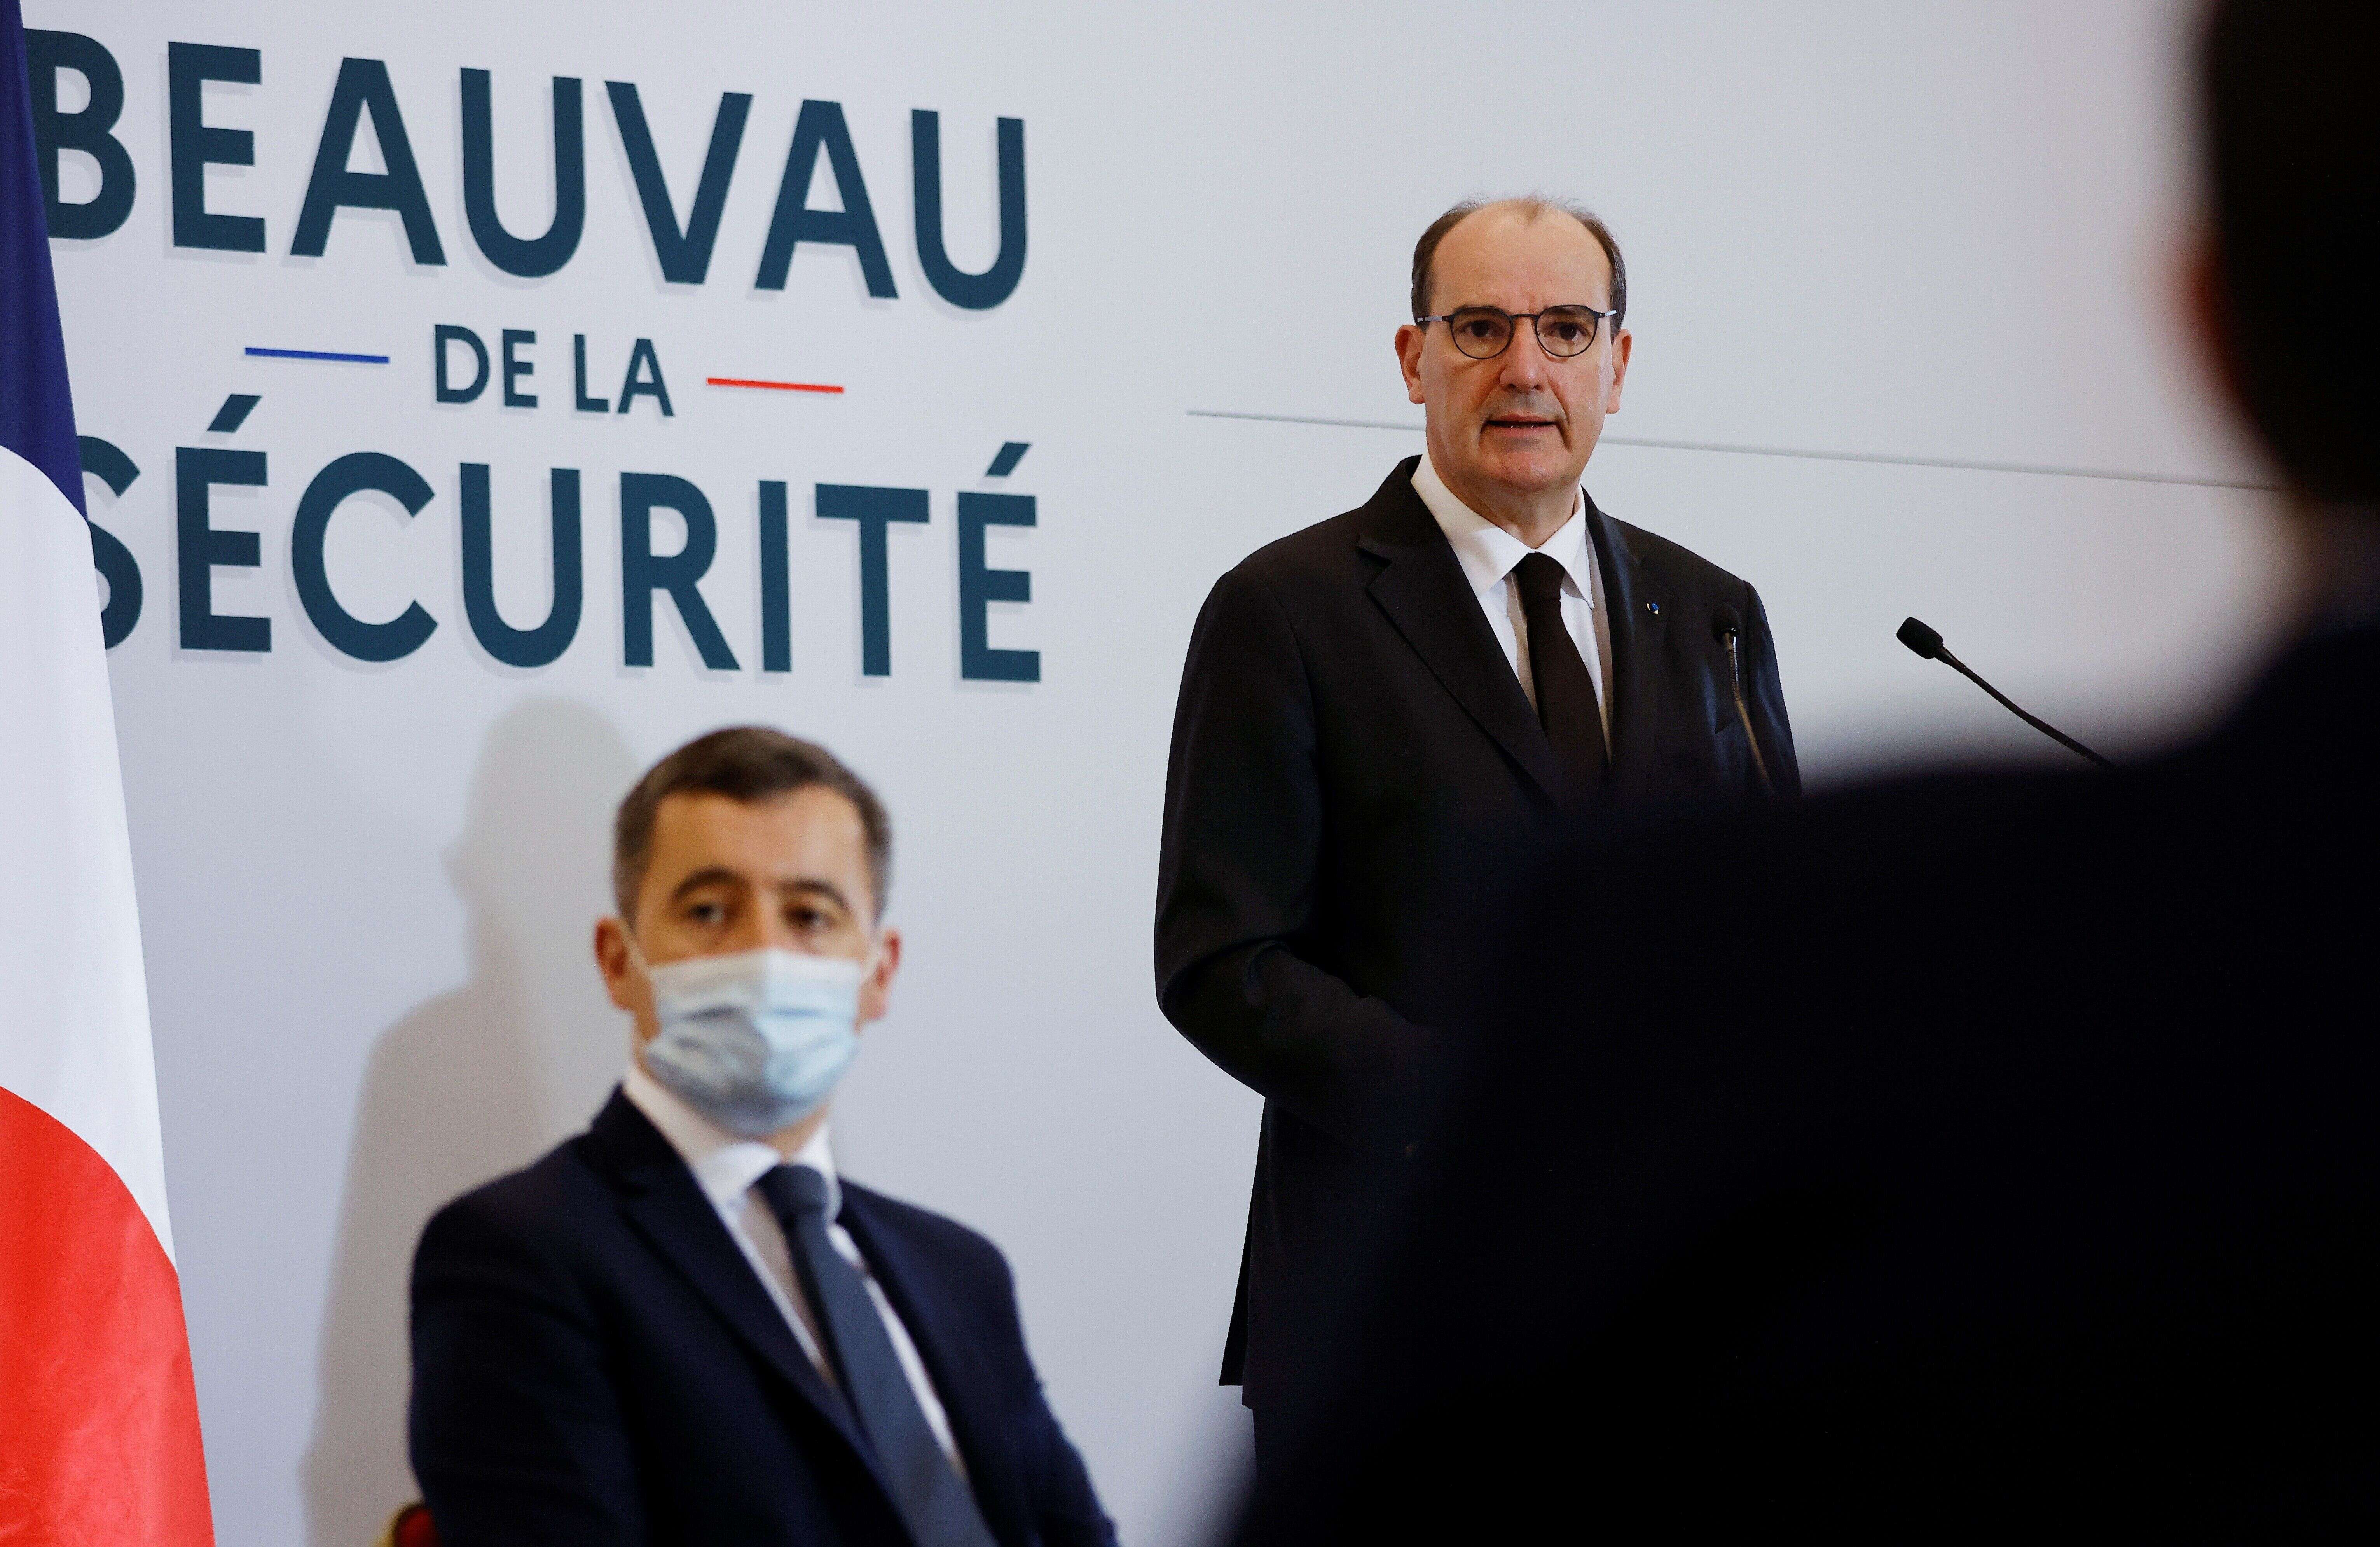 Ce lundi 1er février, le Premier ministre Jean Castex et le ministre de l'Intérieur Gérald Darmanin ont officiellement ouvert le Beauvau de la Sécurité.